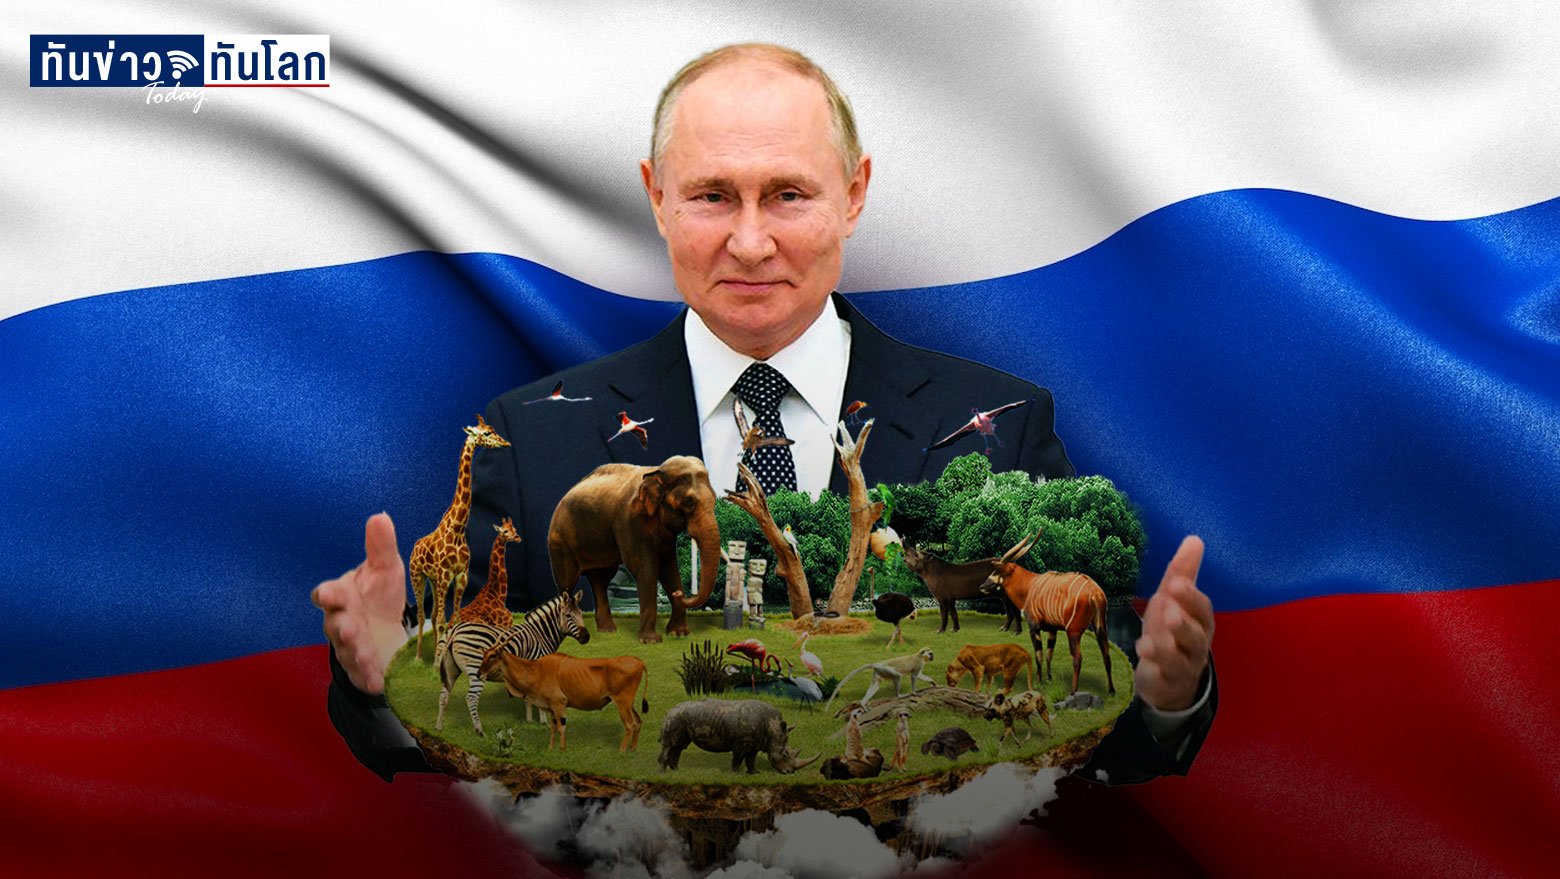 วลาดีมีร์ ปูติน ผู้นำรัสเซียที่เข้มแข็งดั่งขุนเขา แต่หลงไหลในธรรมชาติ และรักสัตว์มาก